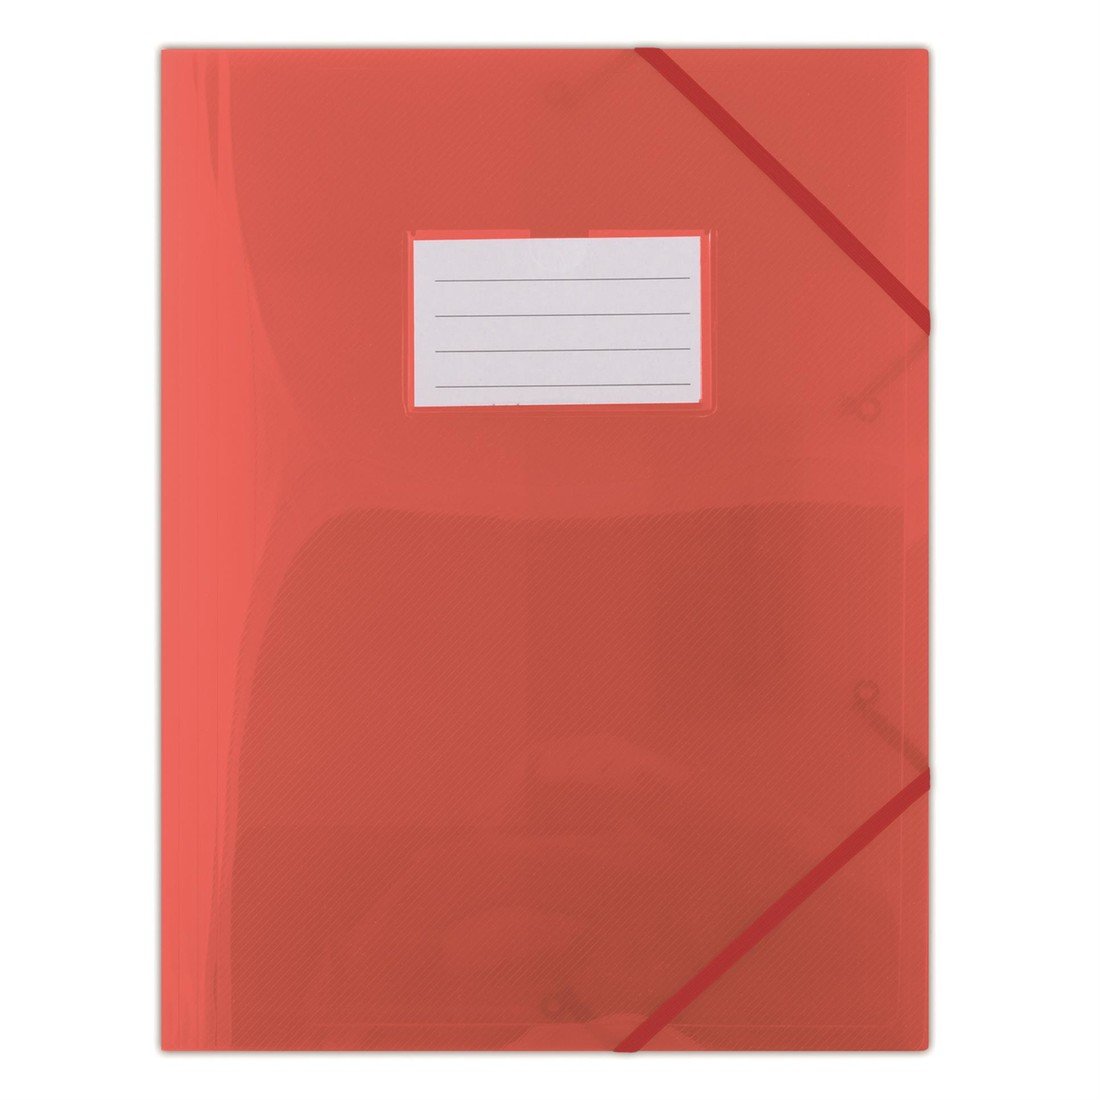 Desky s chlopněmi a gumičkou Donau - A4, plast, červené, 1 ks